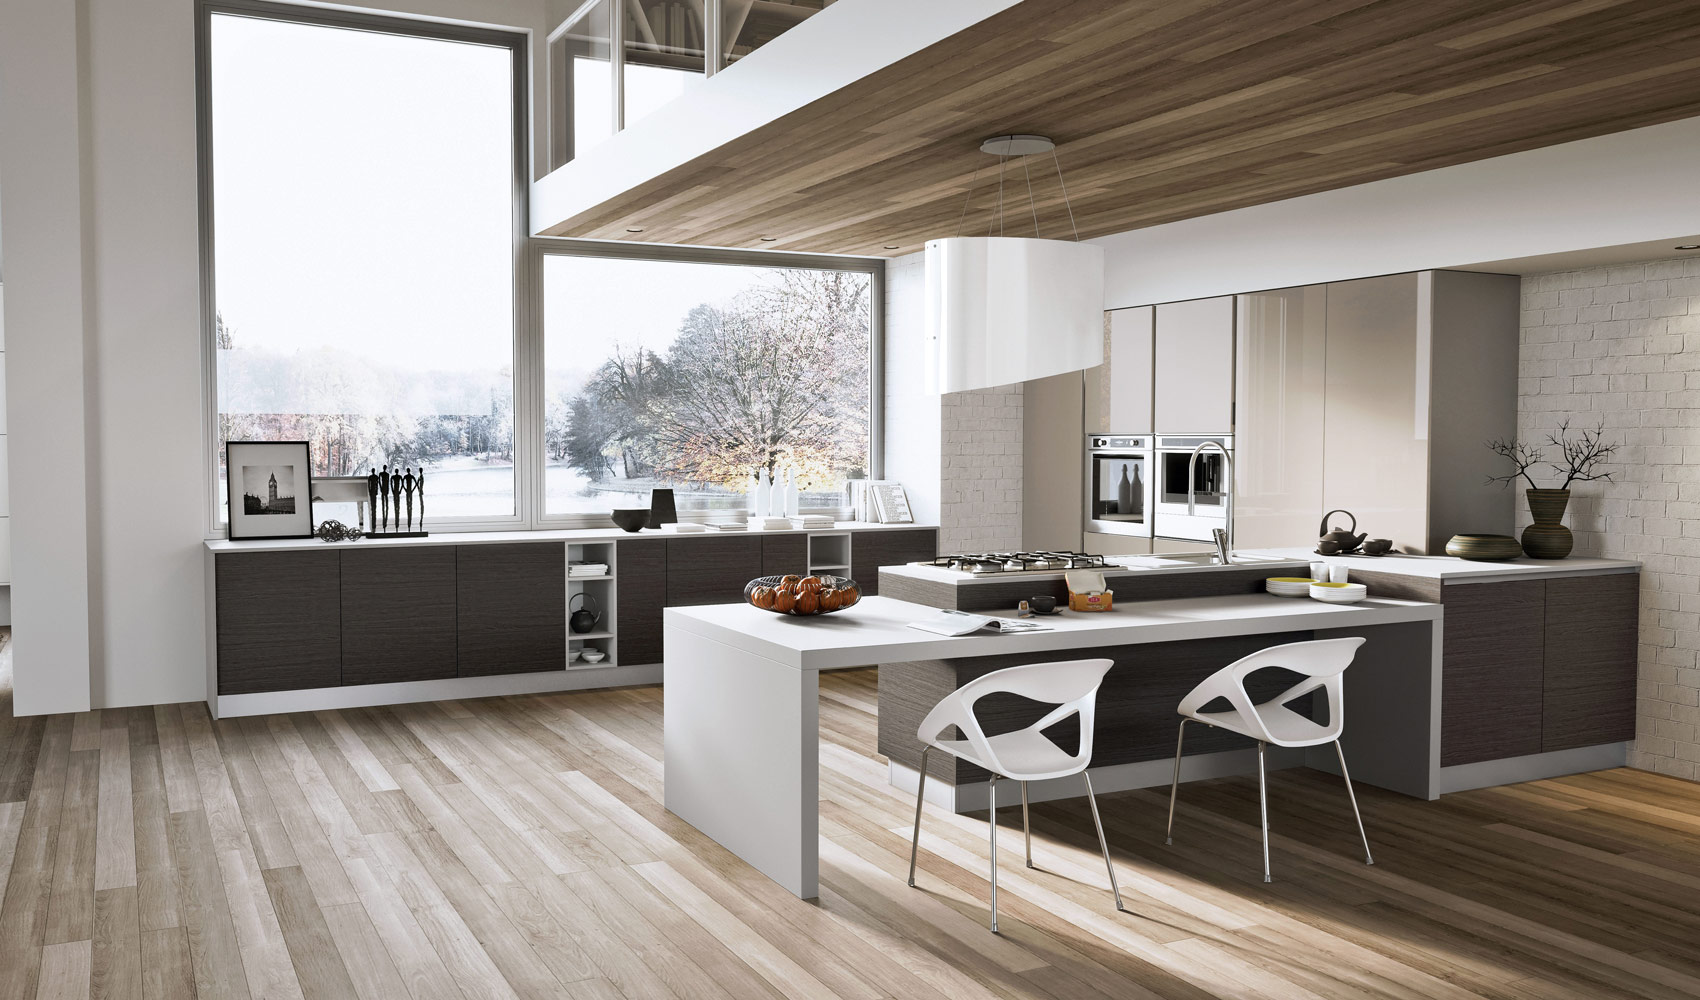 modern kitchen with wooden